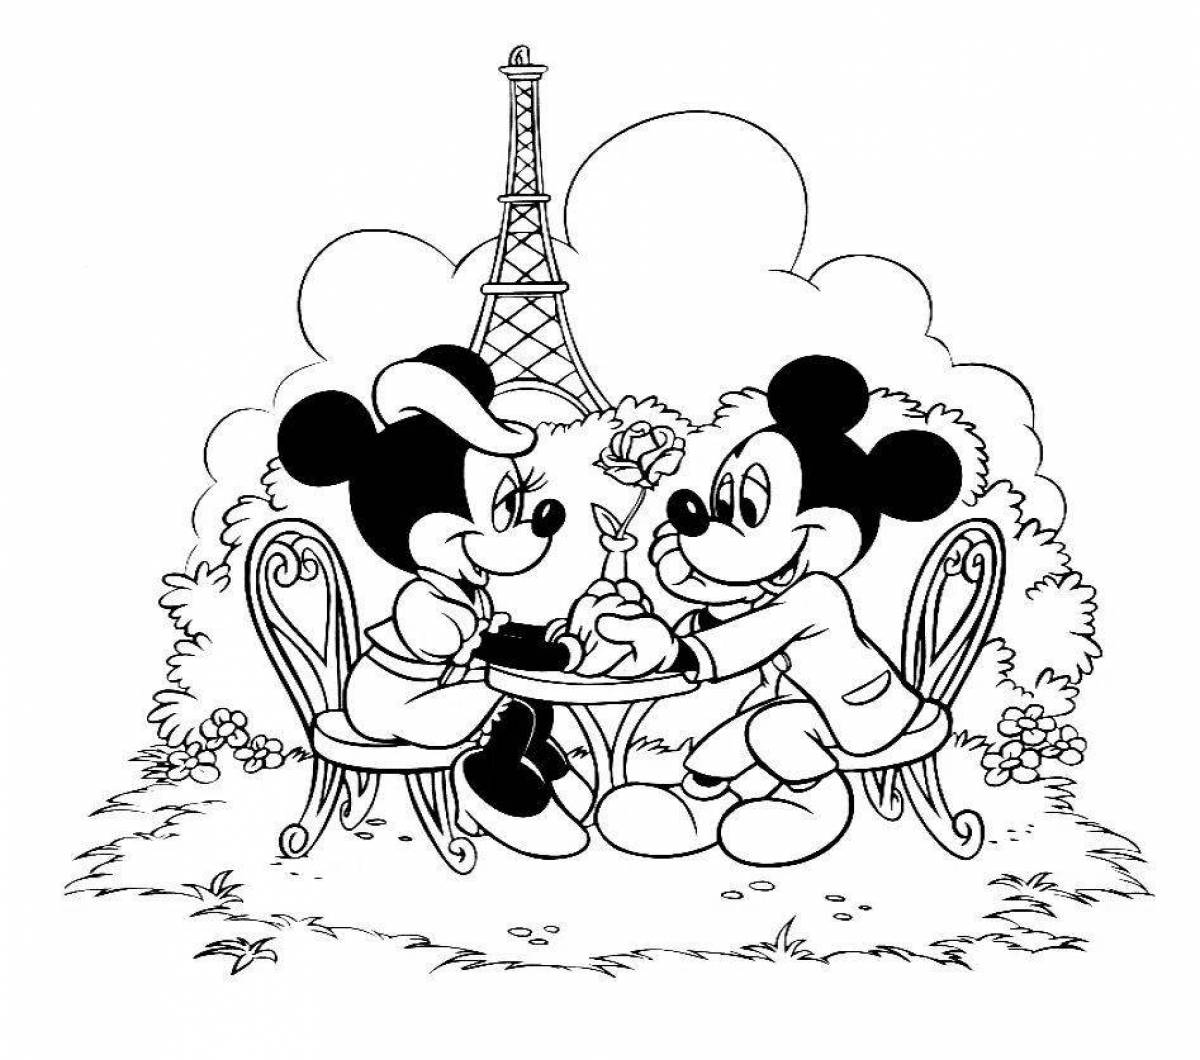 Mickey and mini's fun coloring book